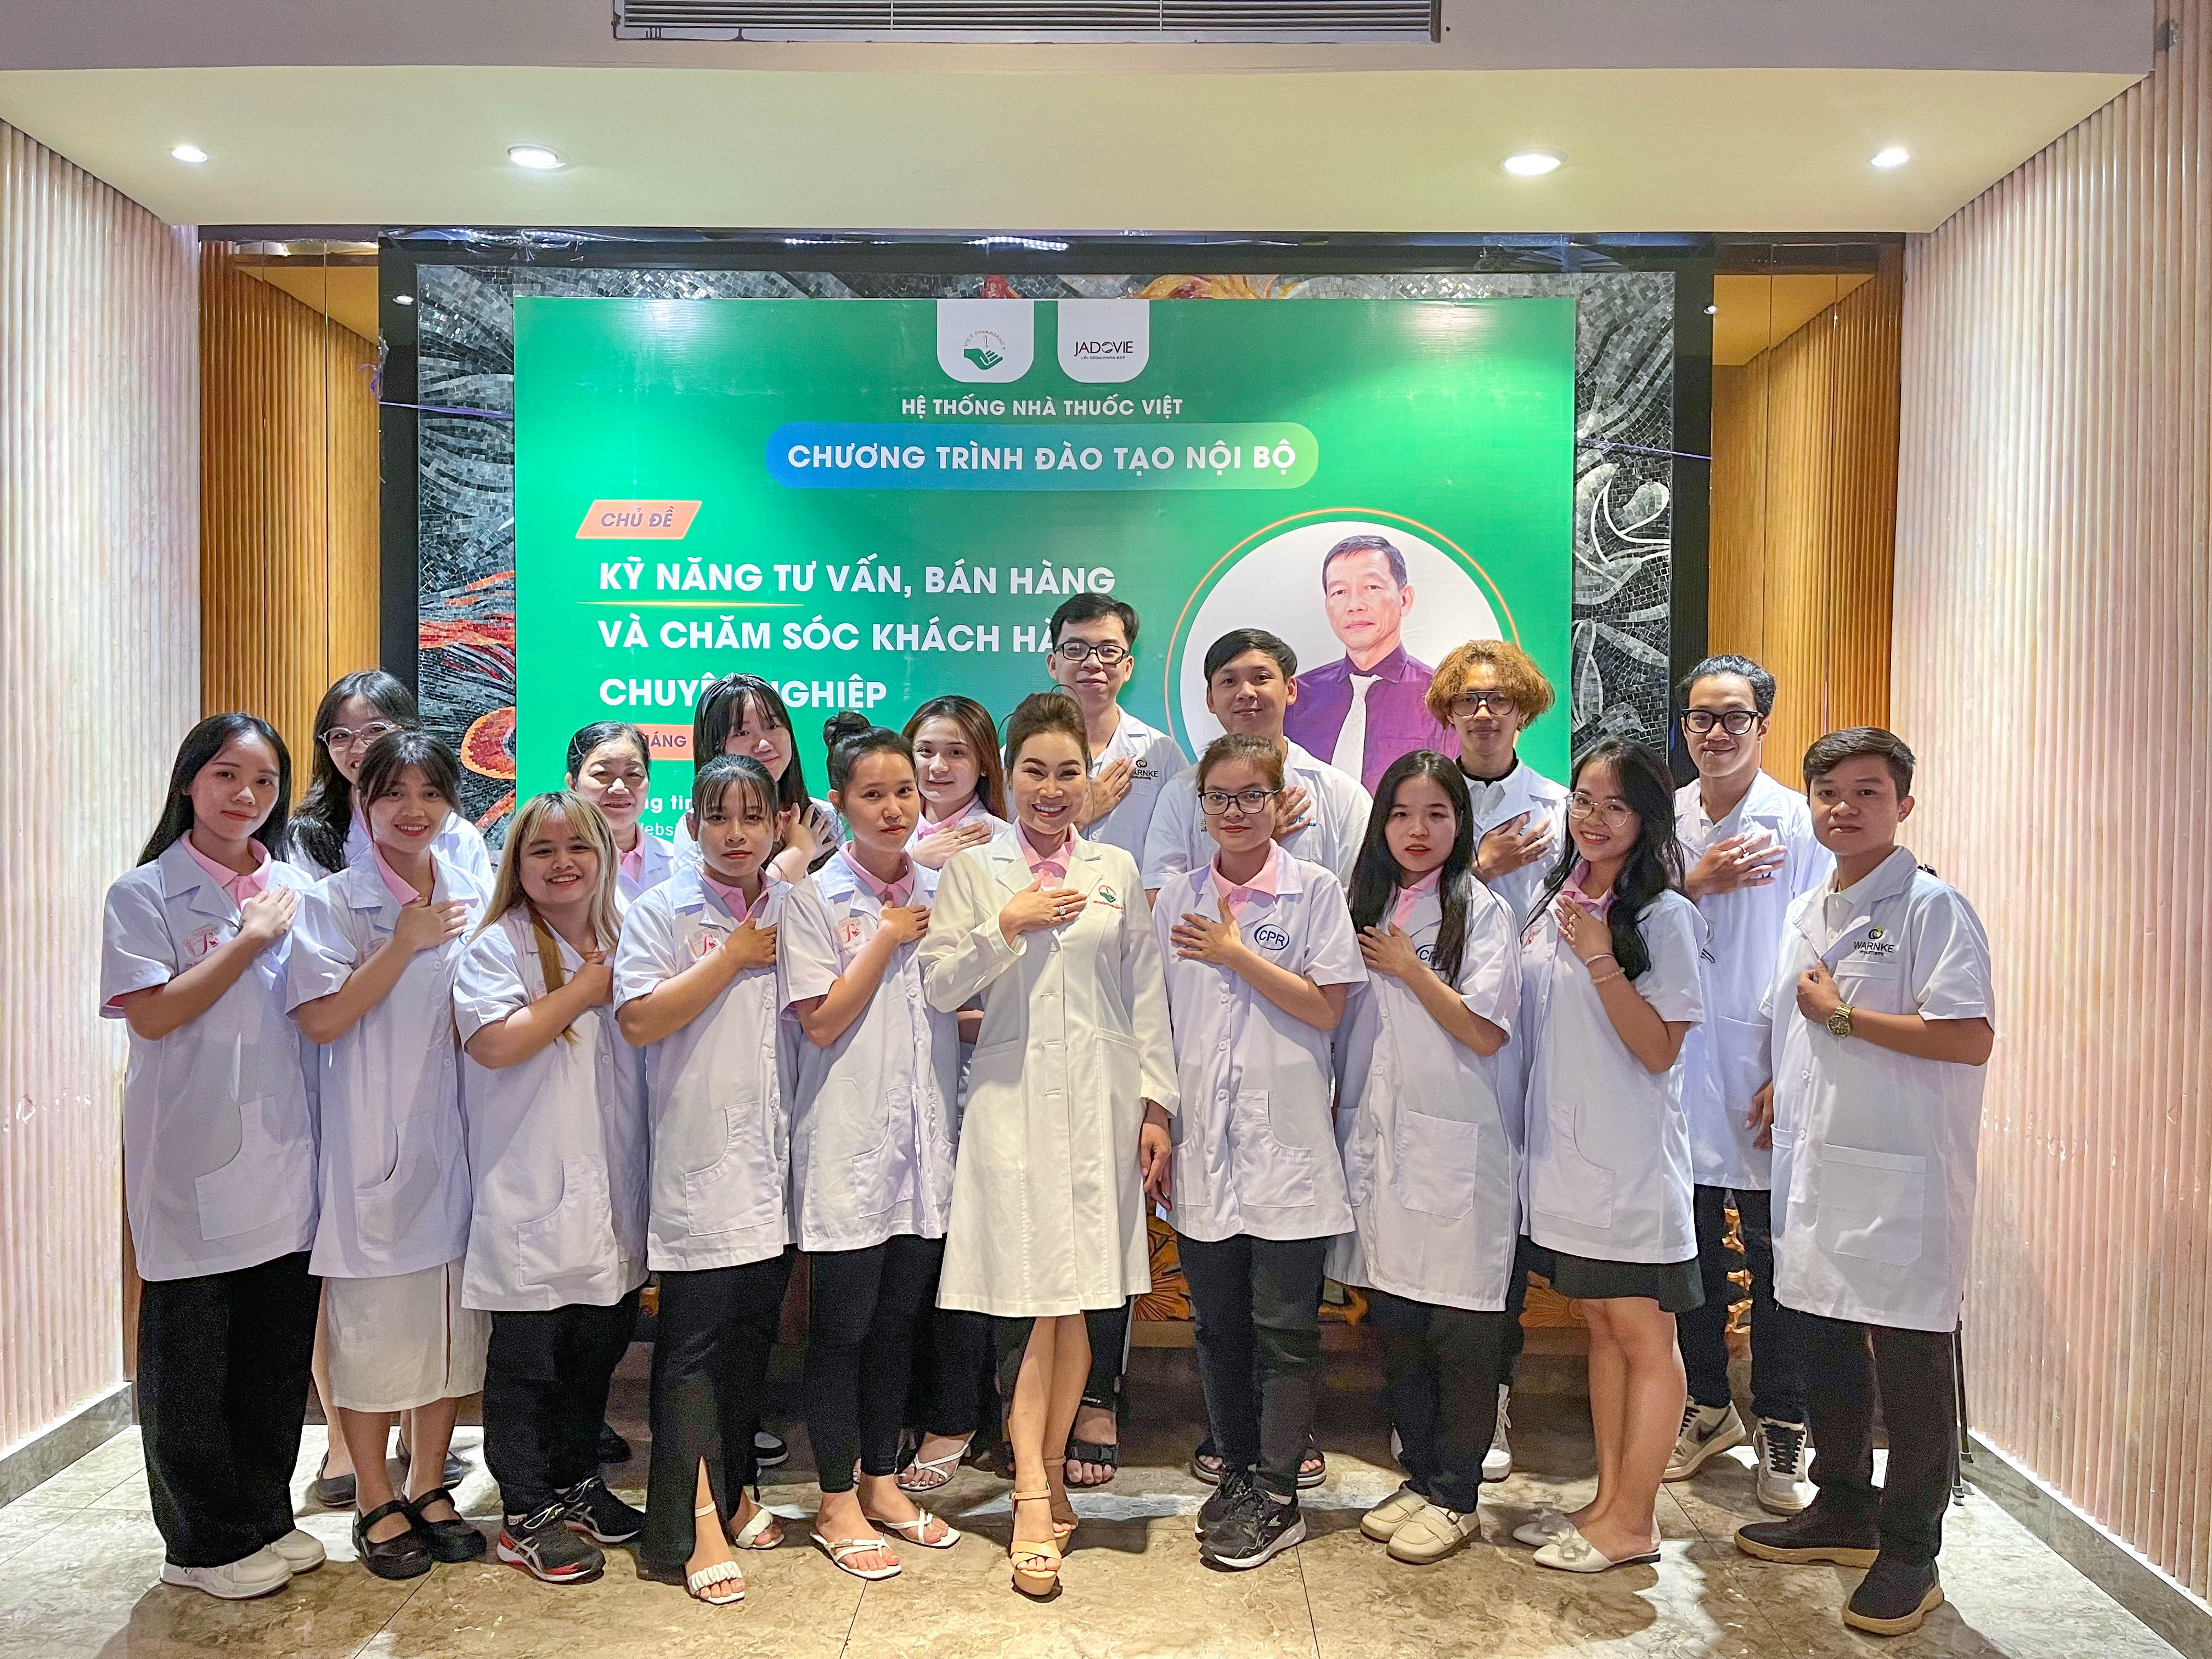 Đội ngũ nhân viên Hệ thống Nhà thuốc Việt